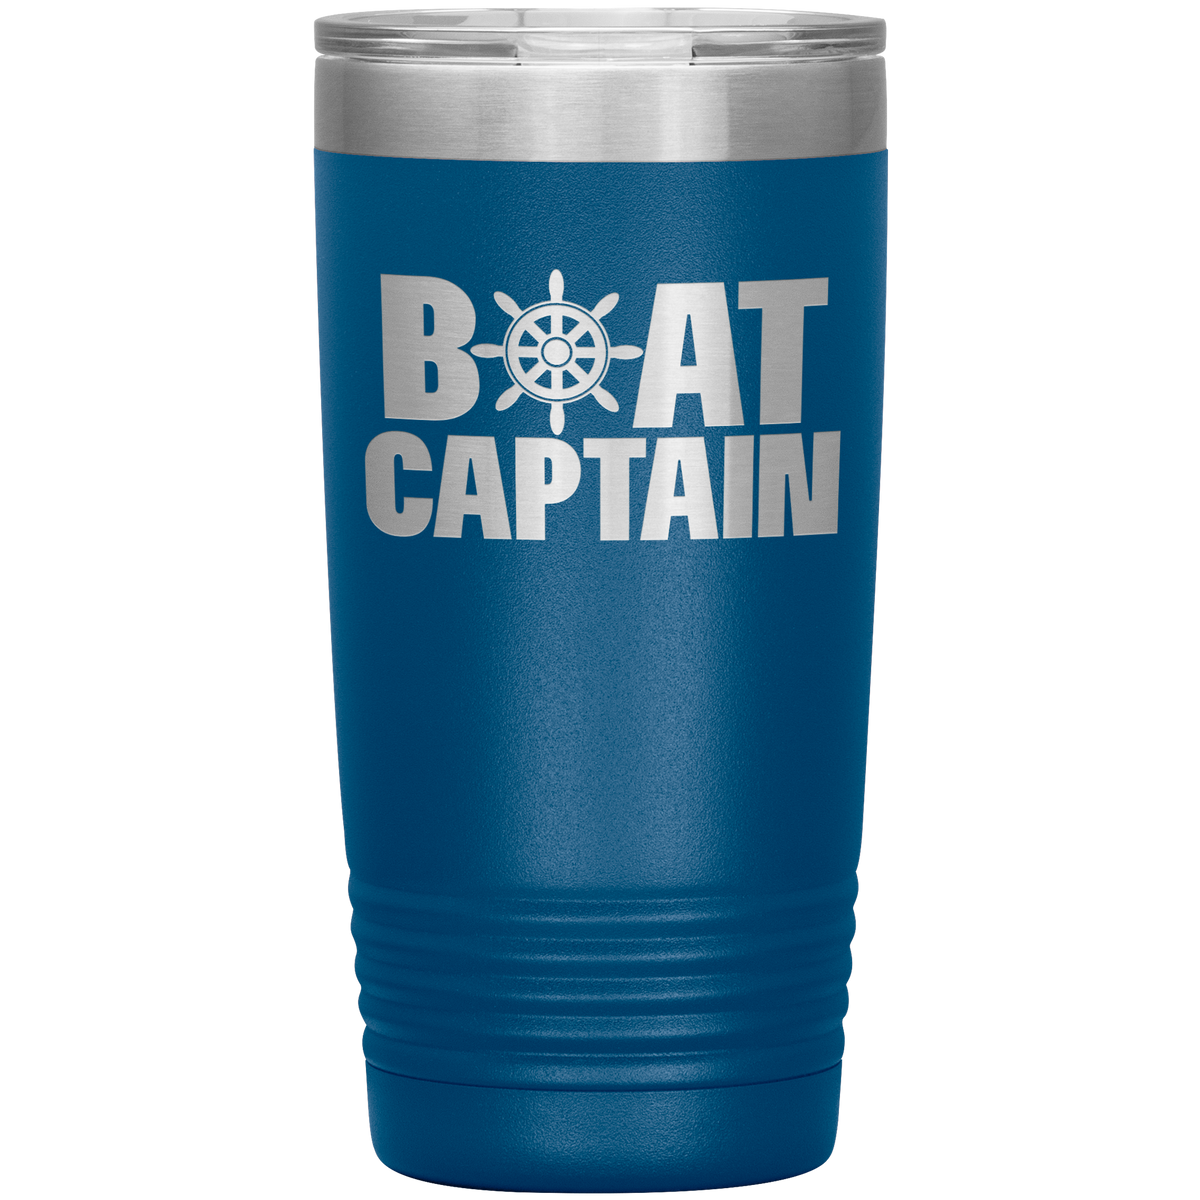 Boat Captain Tumbler Gift 20 oz